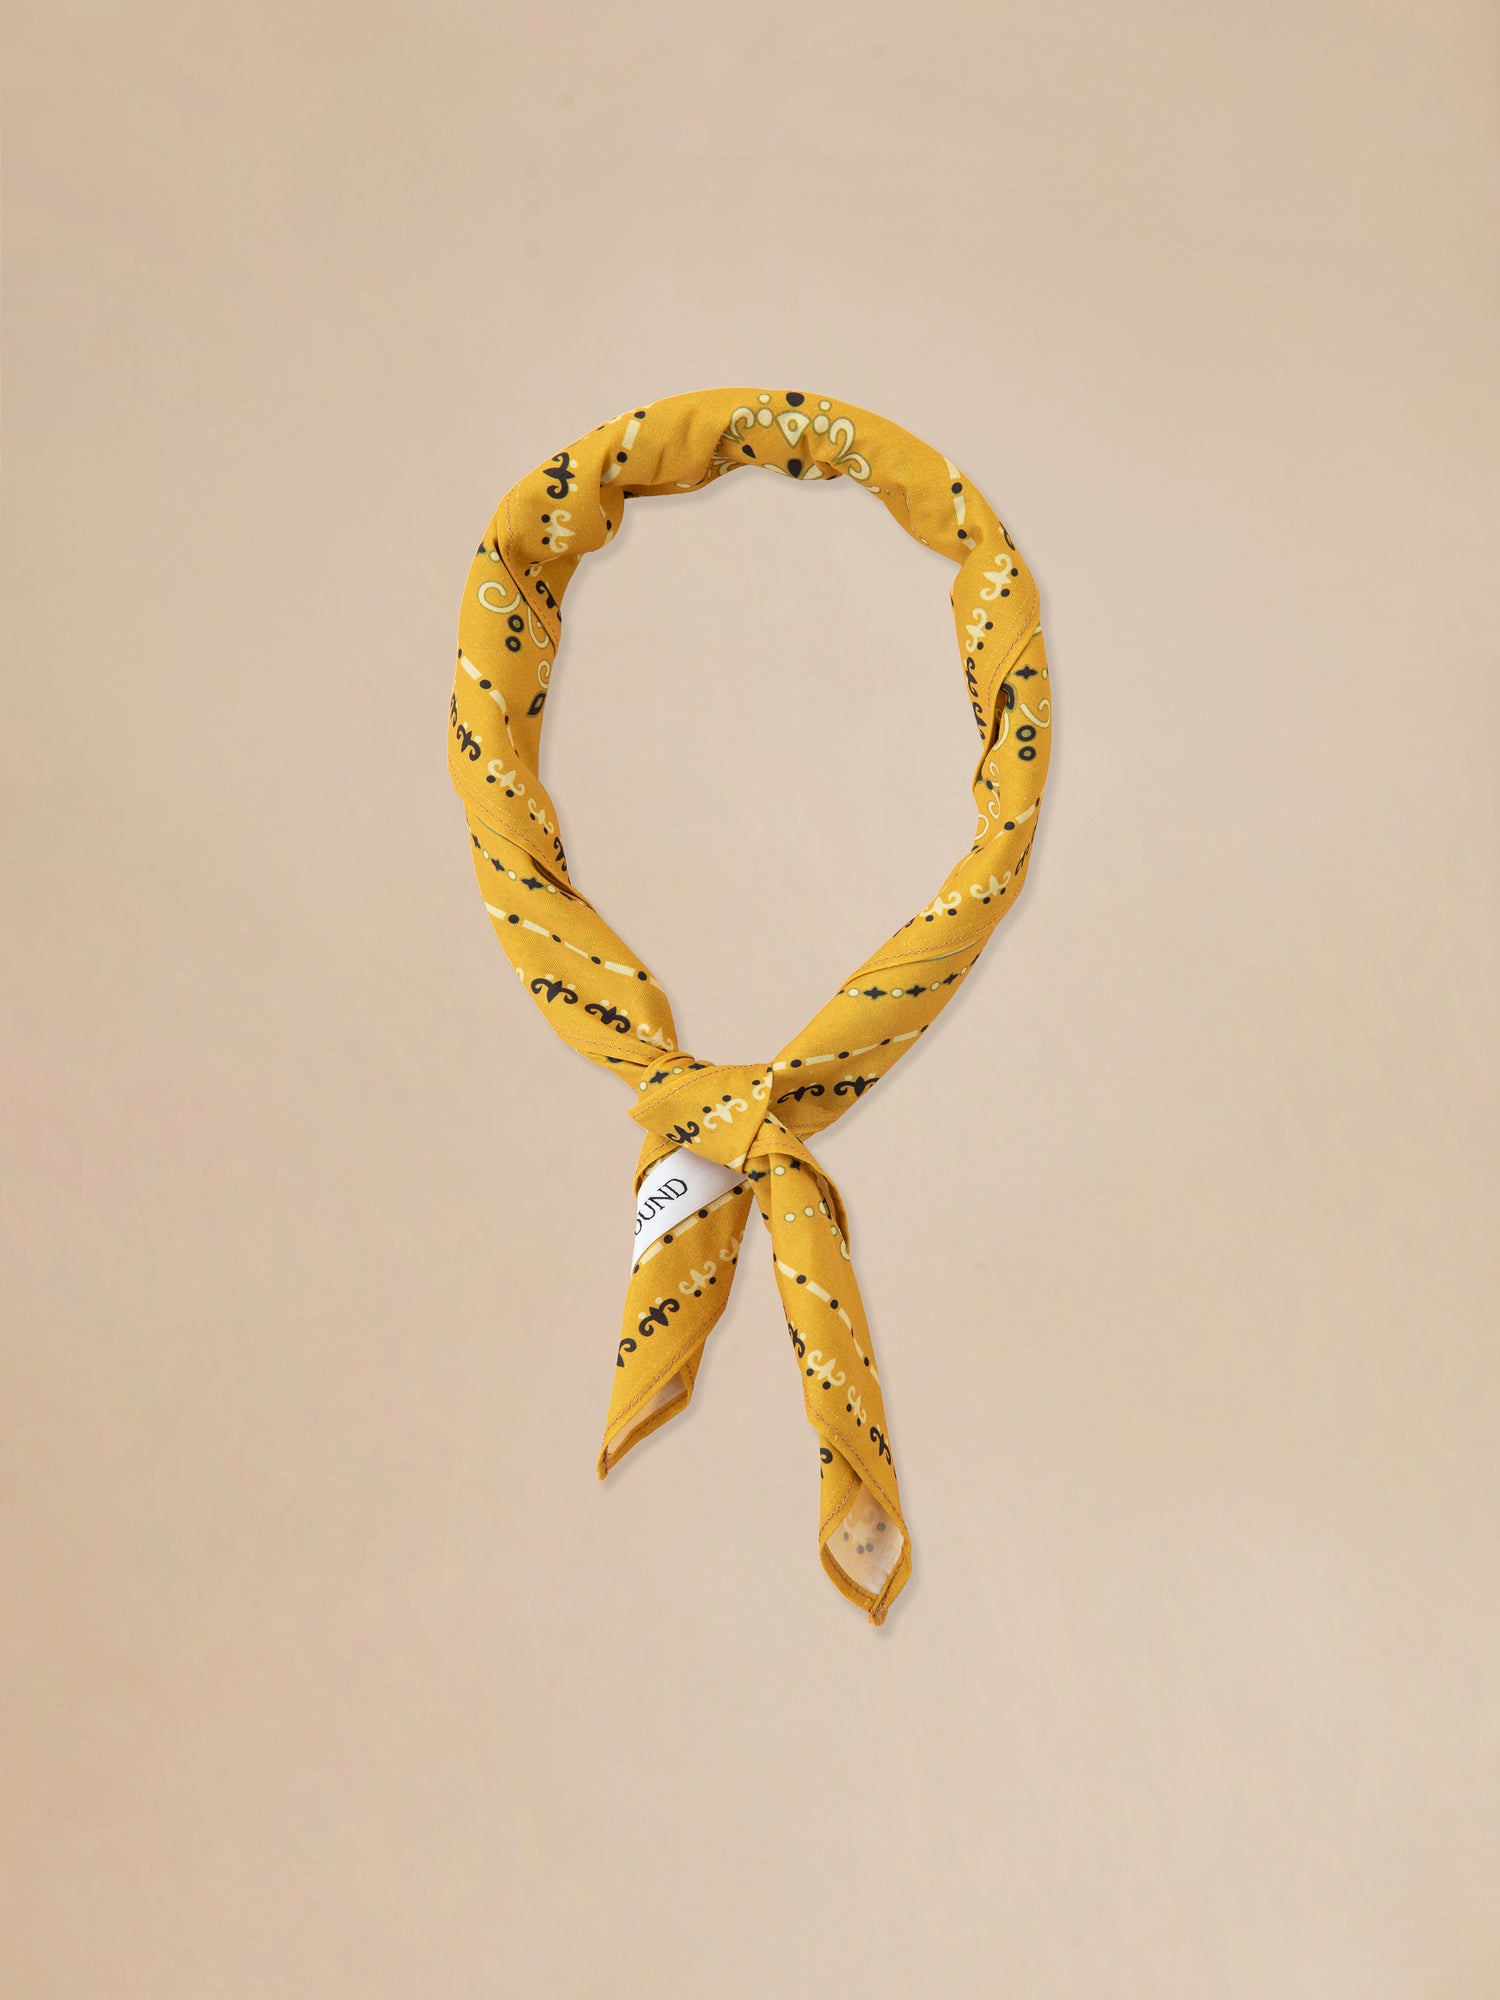 A classic Yellow Western Bandana silk scarf by Found.